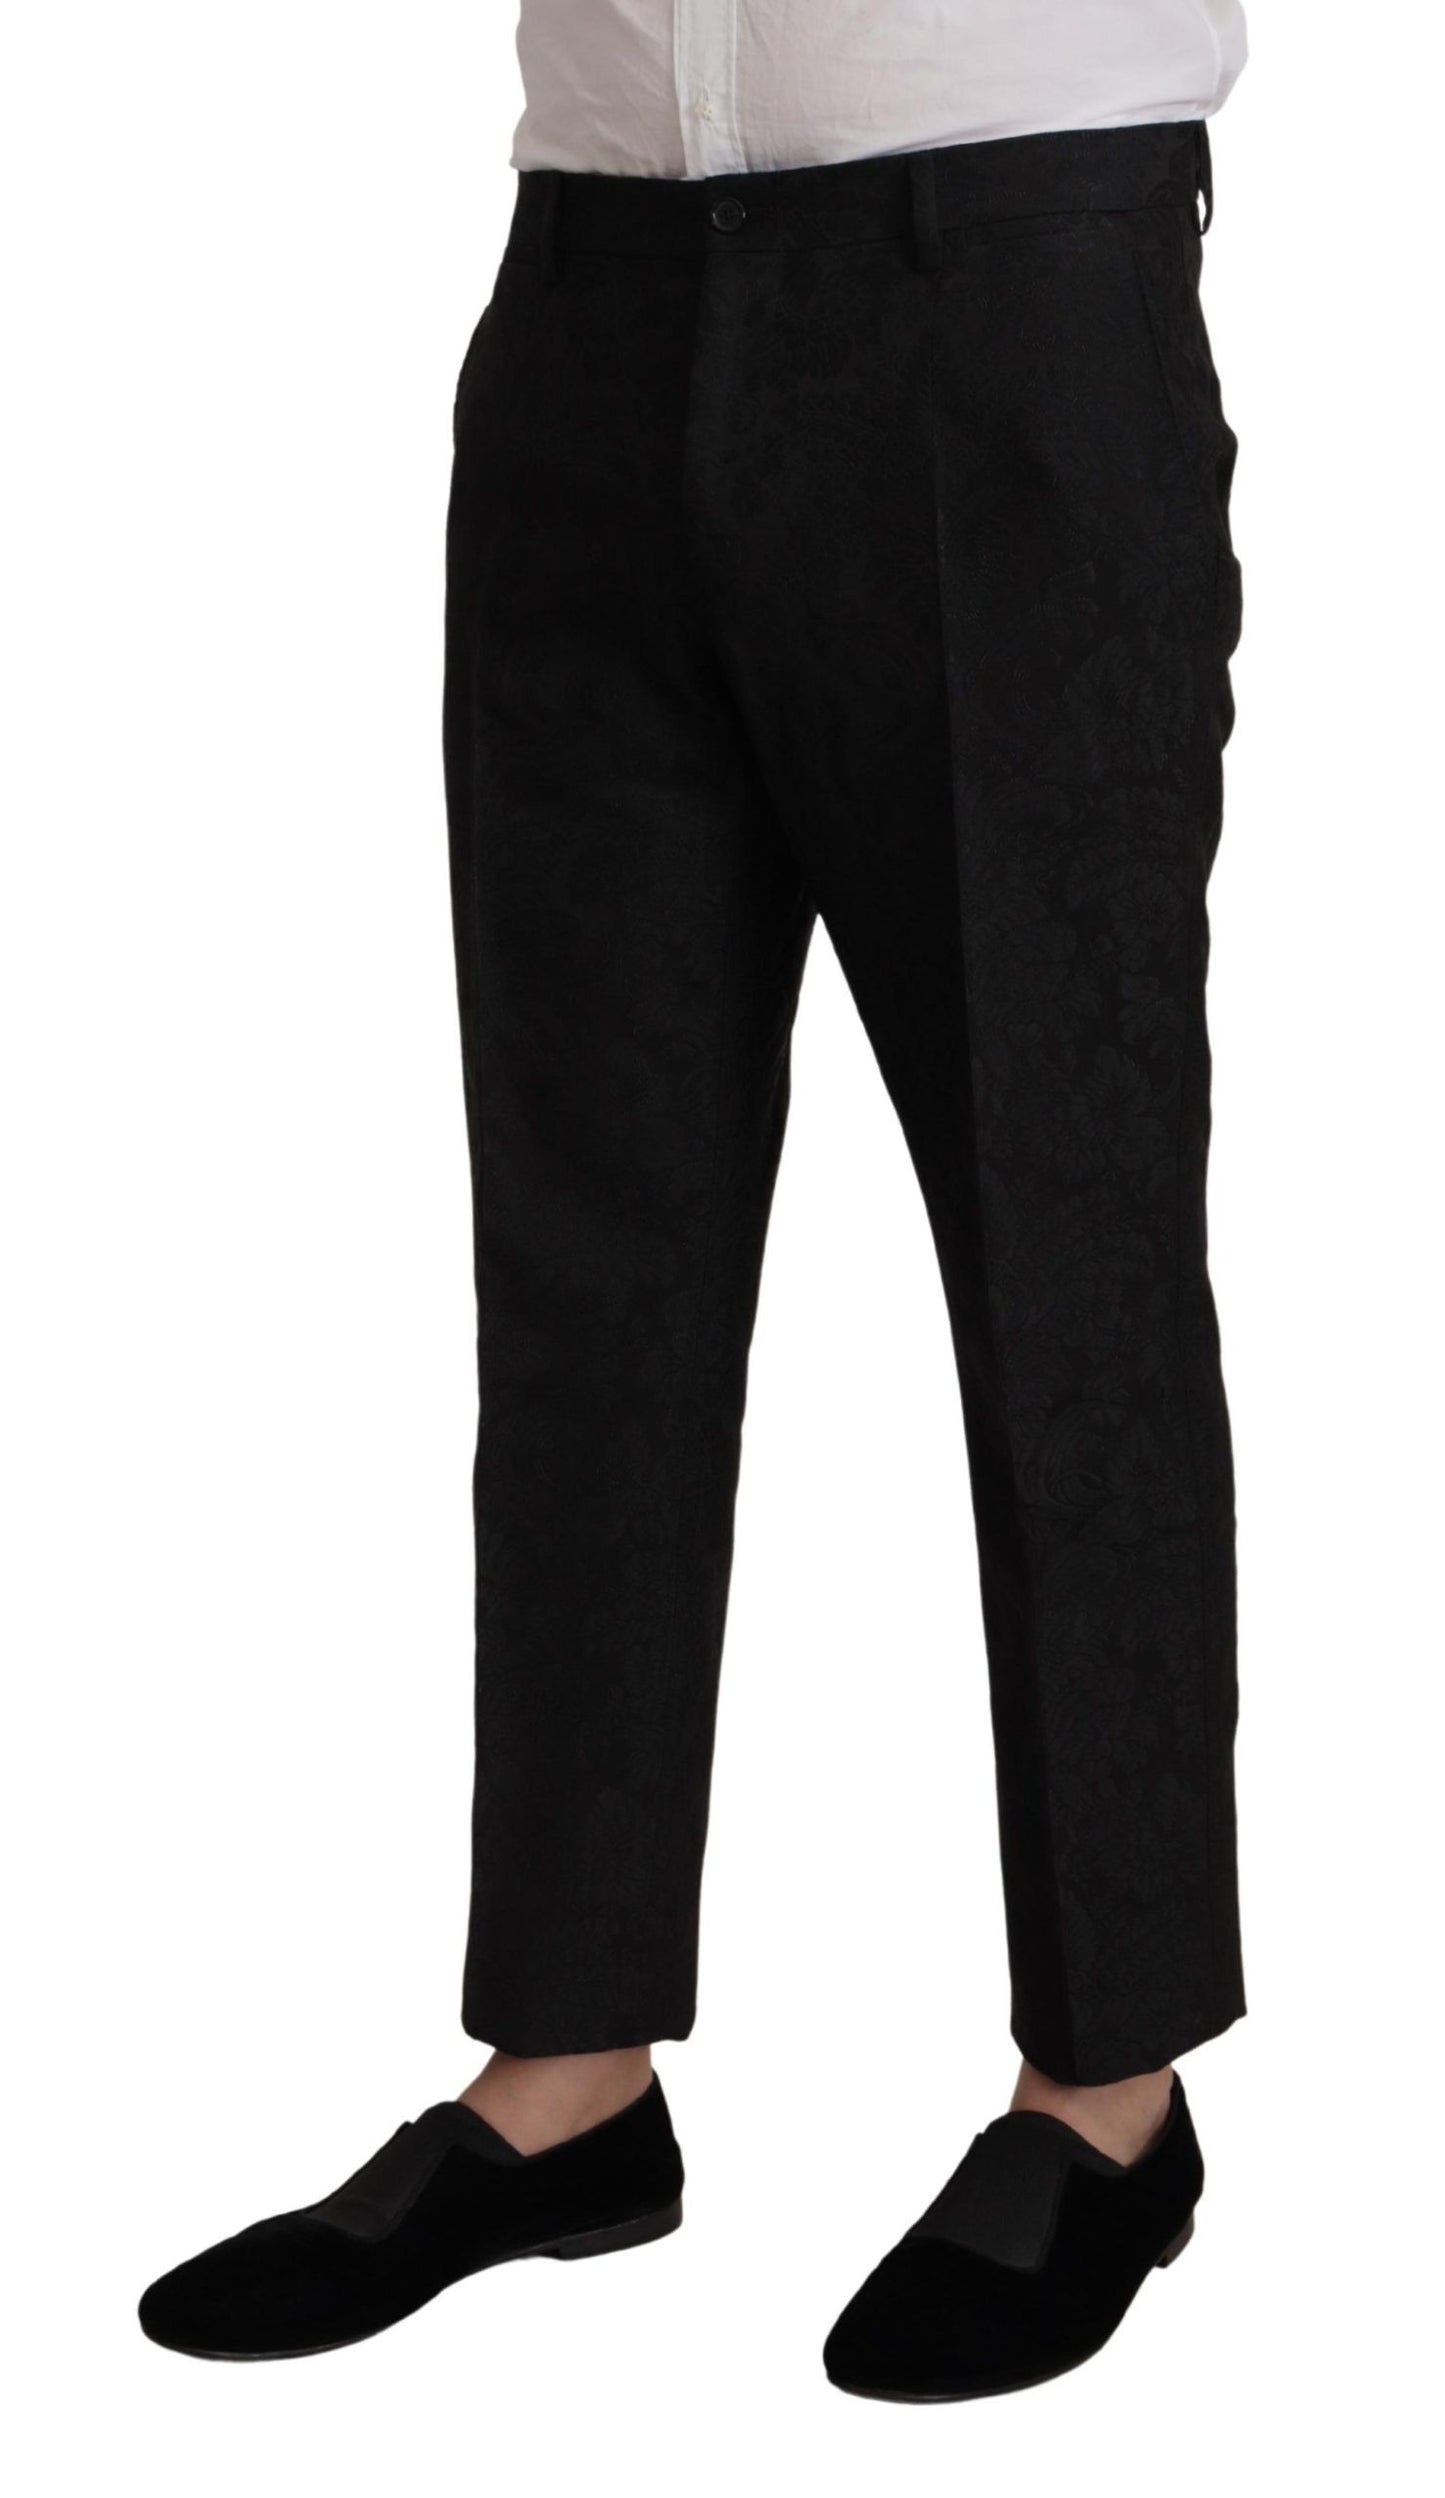 Elegant Black Two-Piece Martini Suit